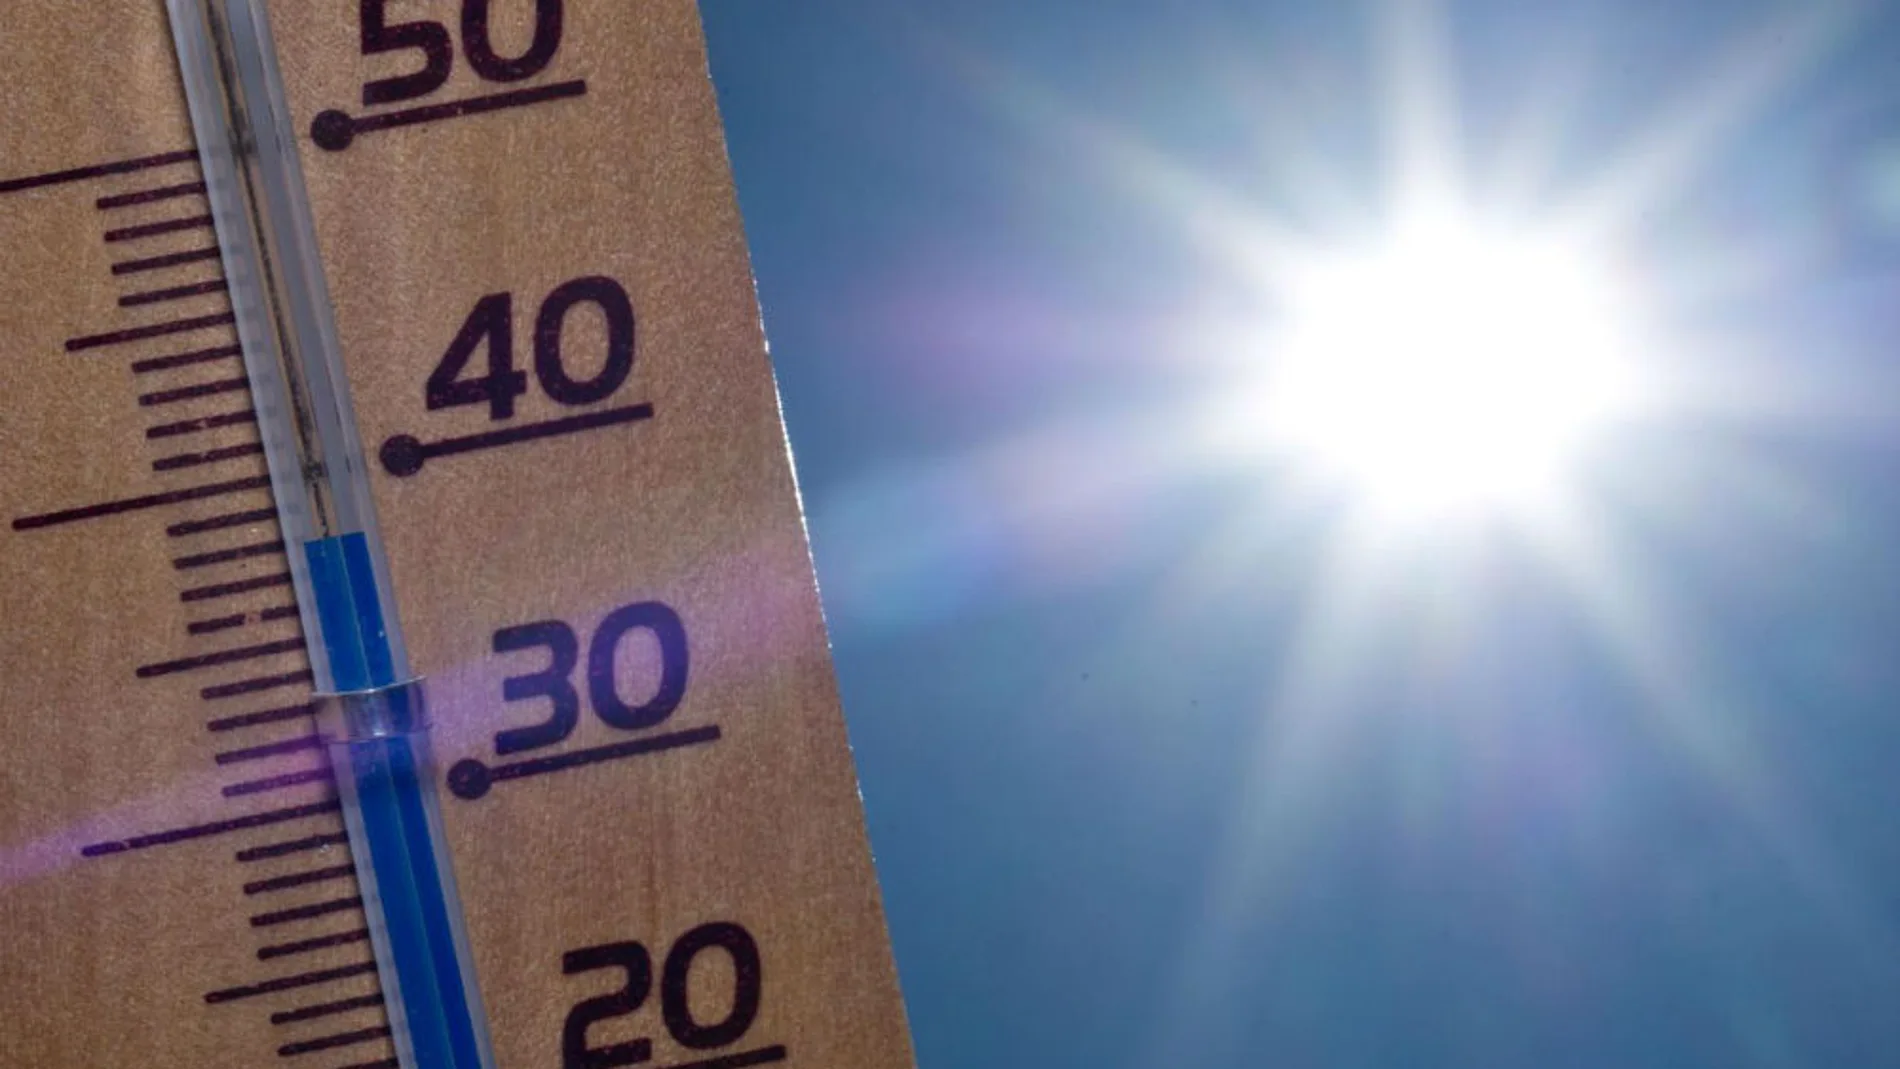 Se esperan temperaturas a lo largo de las próximas horas por encima de los 32 grados